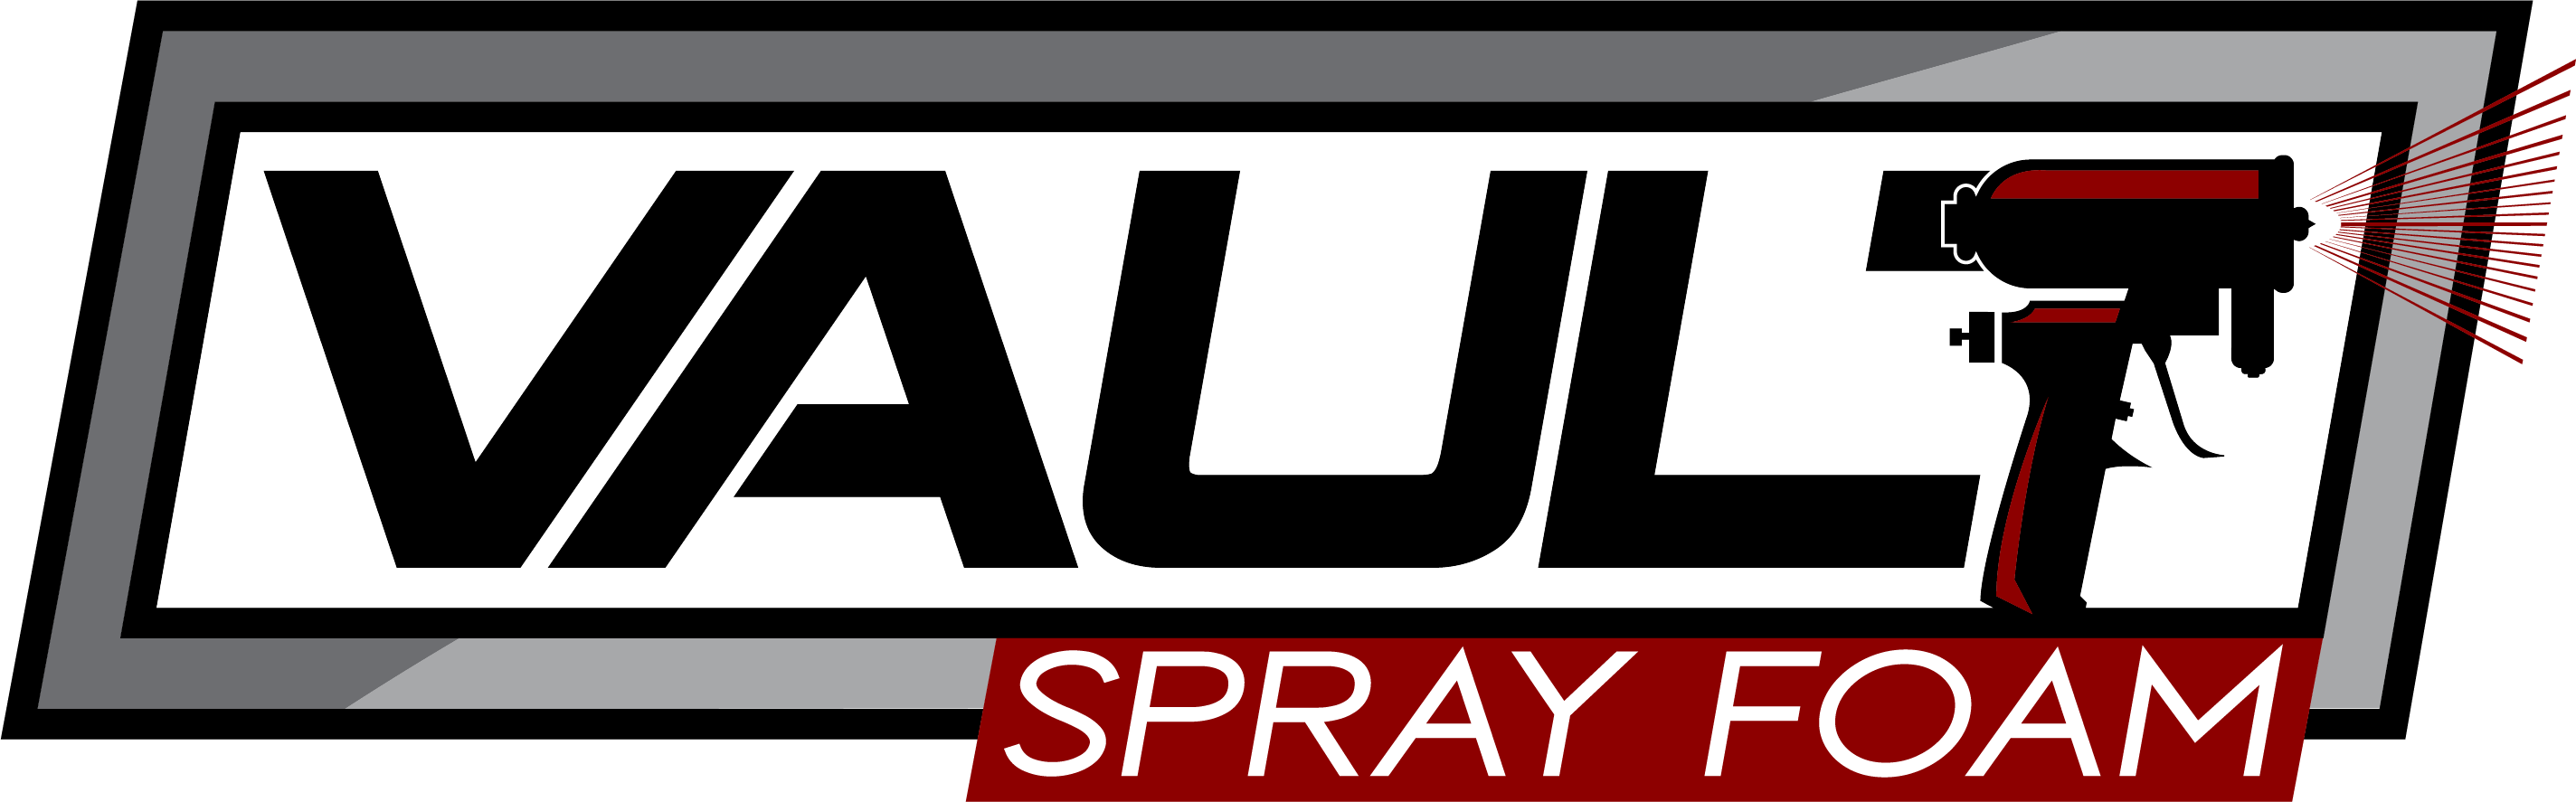 Vault Spray Foam Logo